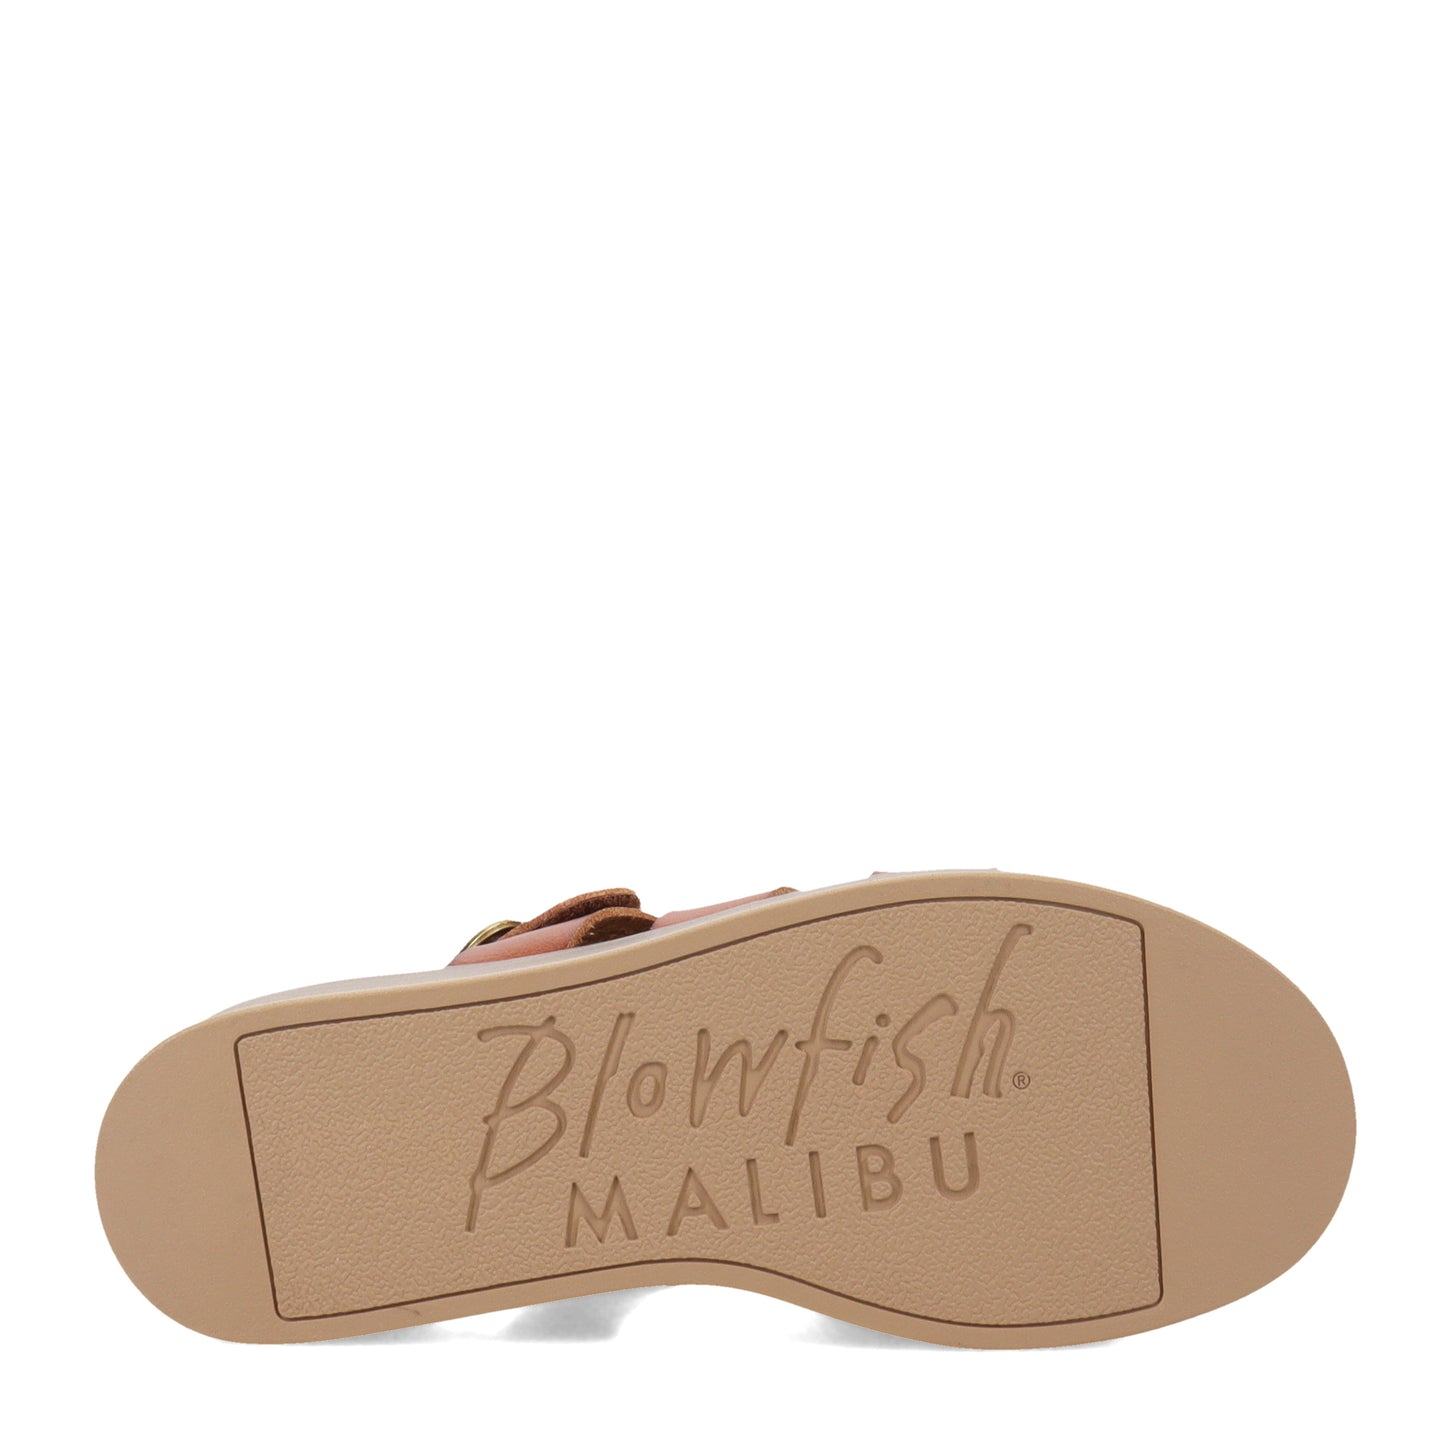 Peltz Shoes  Women's Blowfish Malibu London Sandal BROWN BF-10070-032